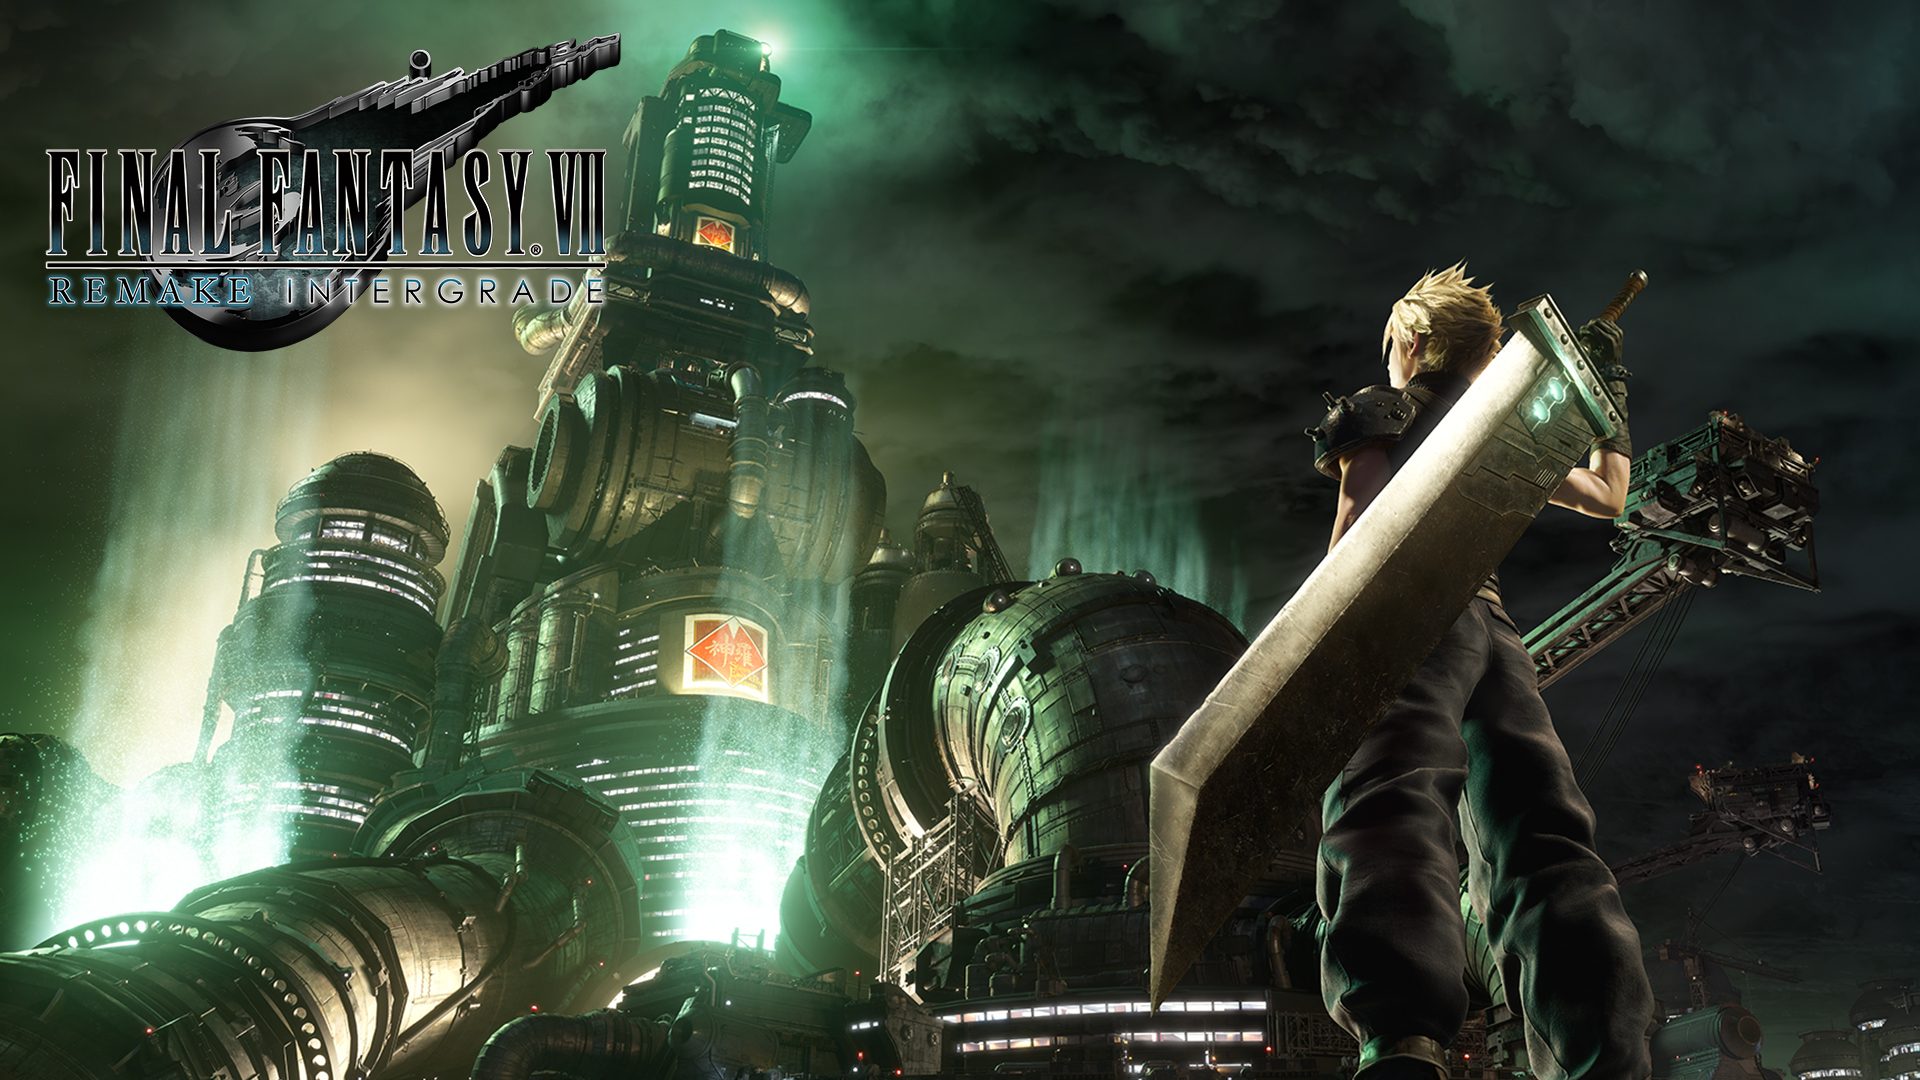 Final Fantasy Vii Remake Intergrade Arrives On Ps5 June 10 21 Playstation Blog